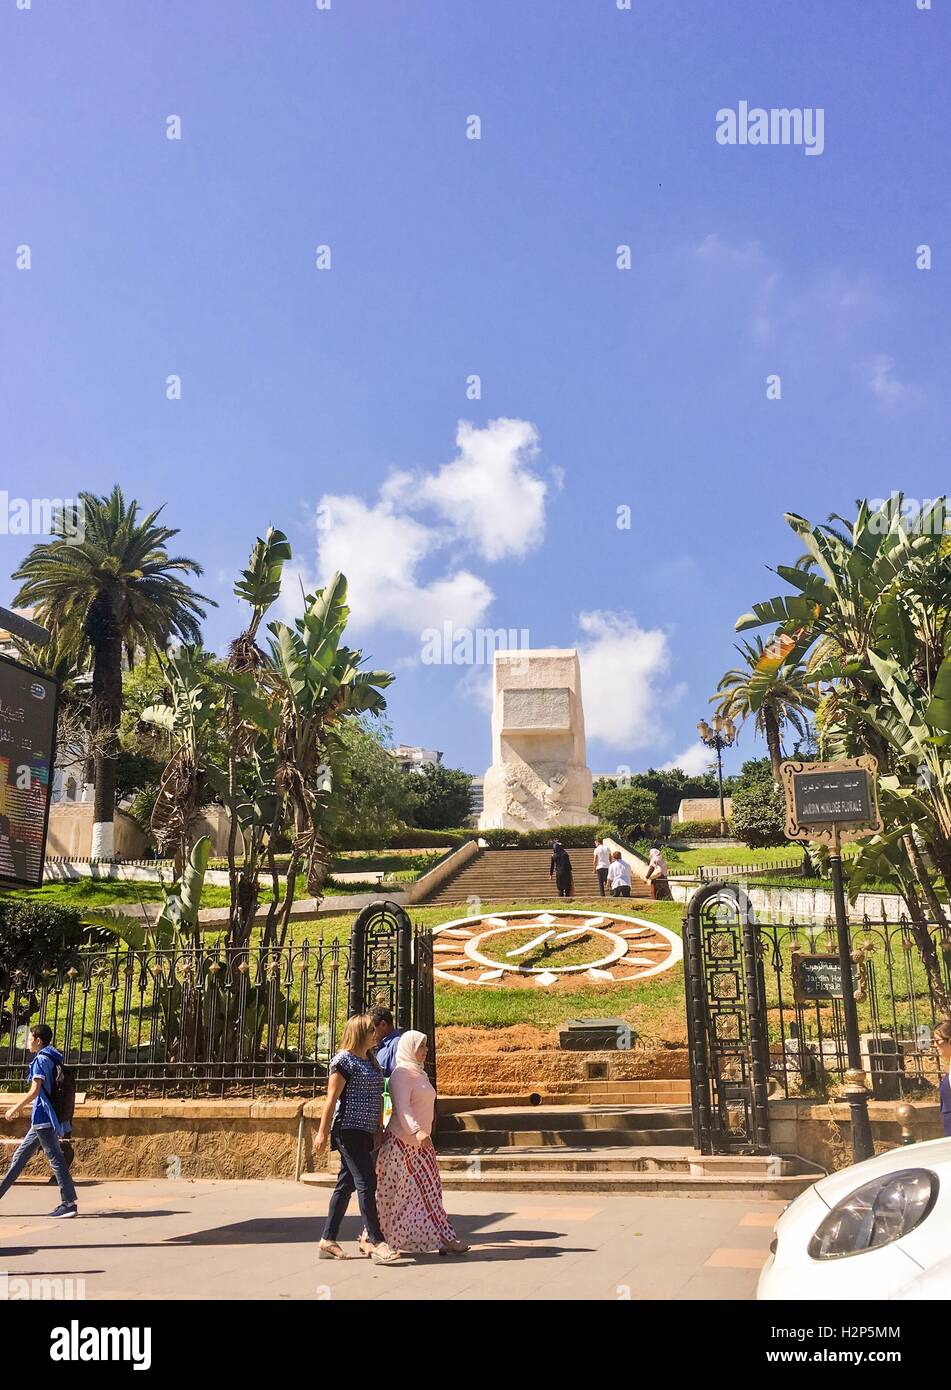 Boulevard de la liberté monument à jardin horloge florale park à Alger Algérie Banque D'Images